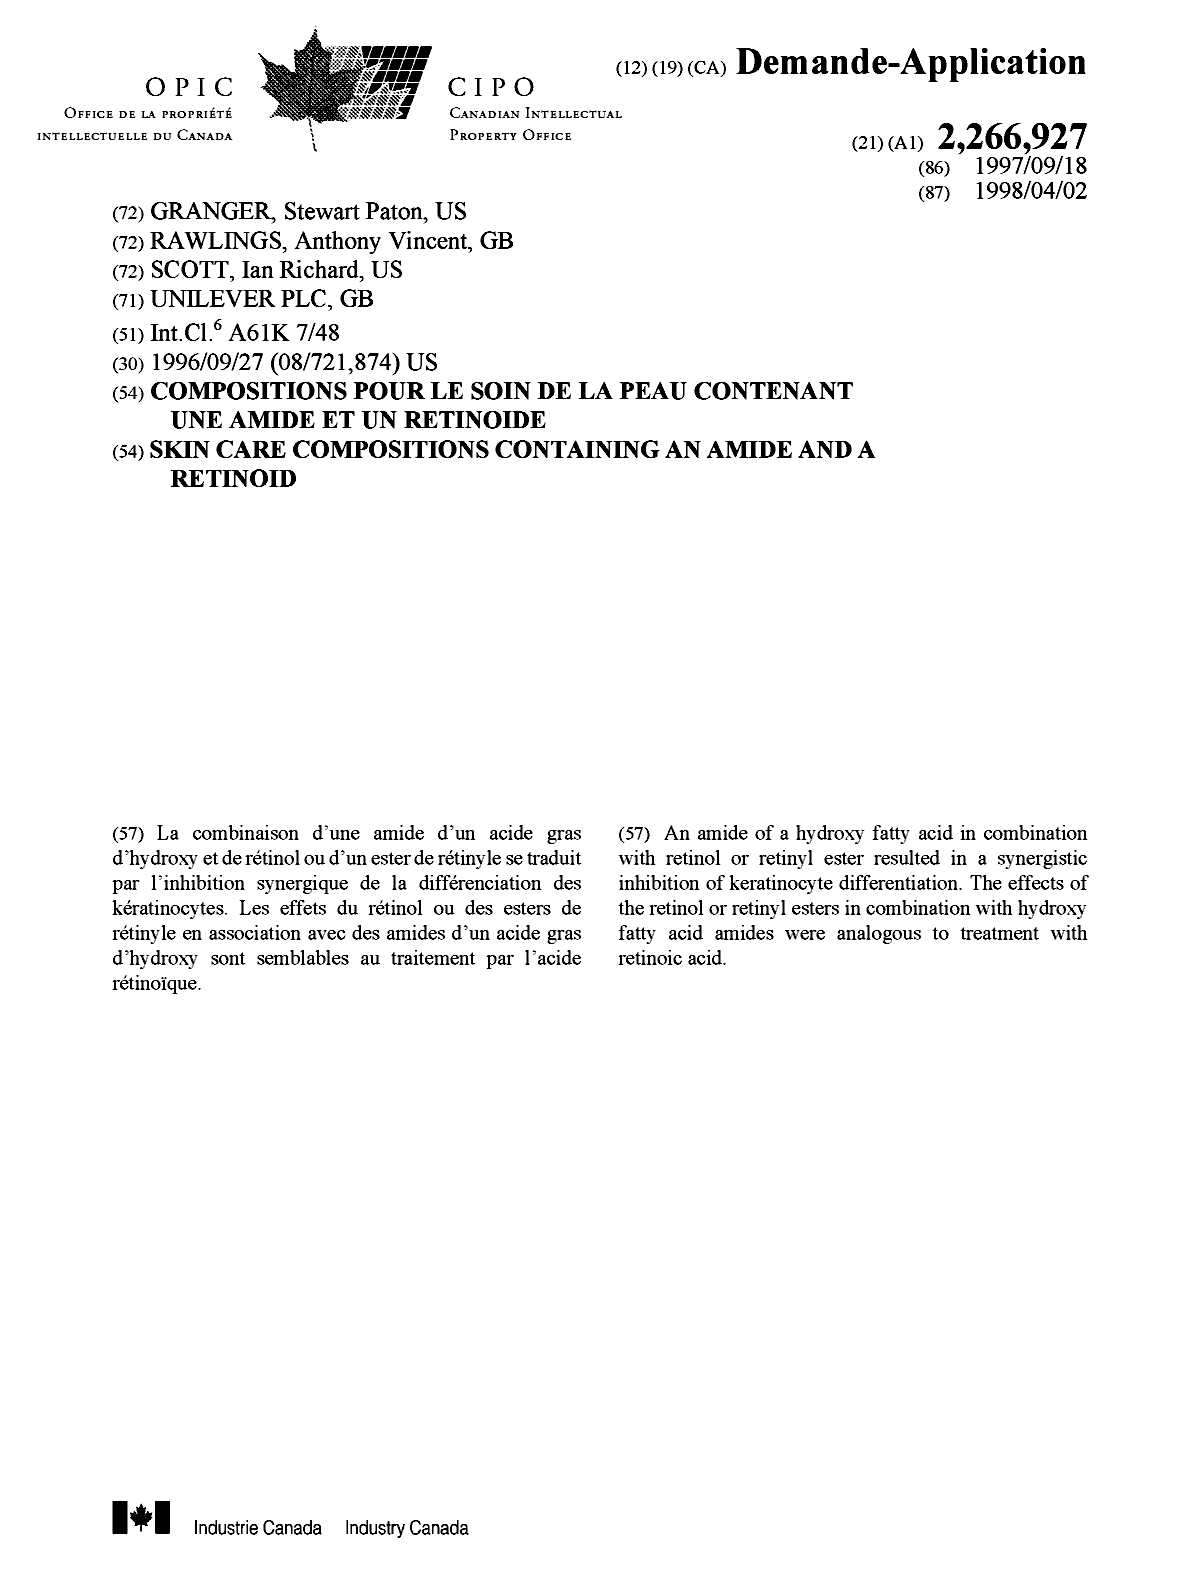 Document de brevet canadien 2266927. Page couverture 19990601. Image 1 de 1